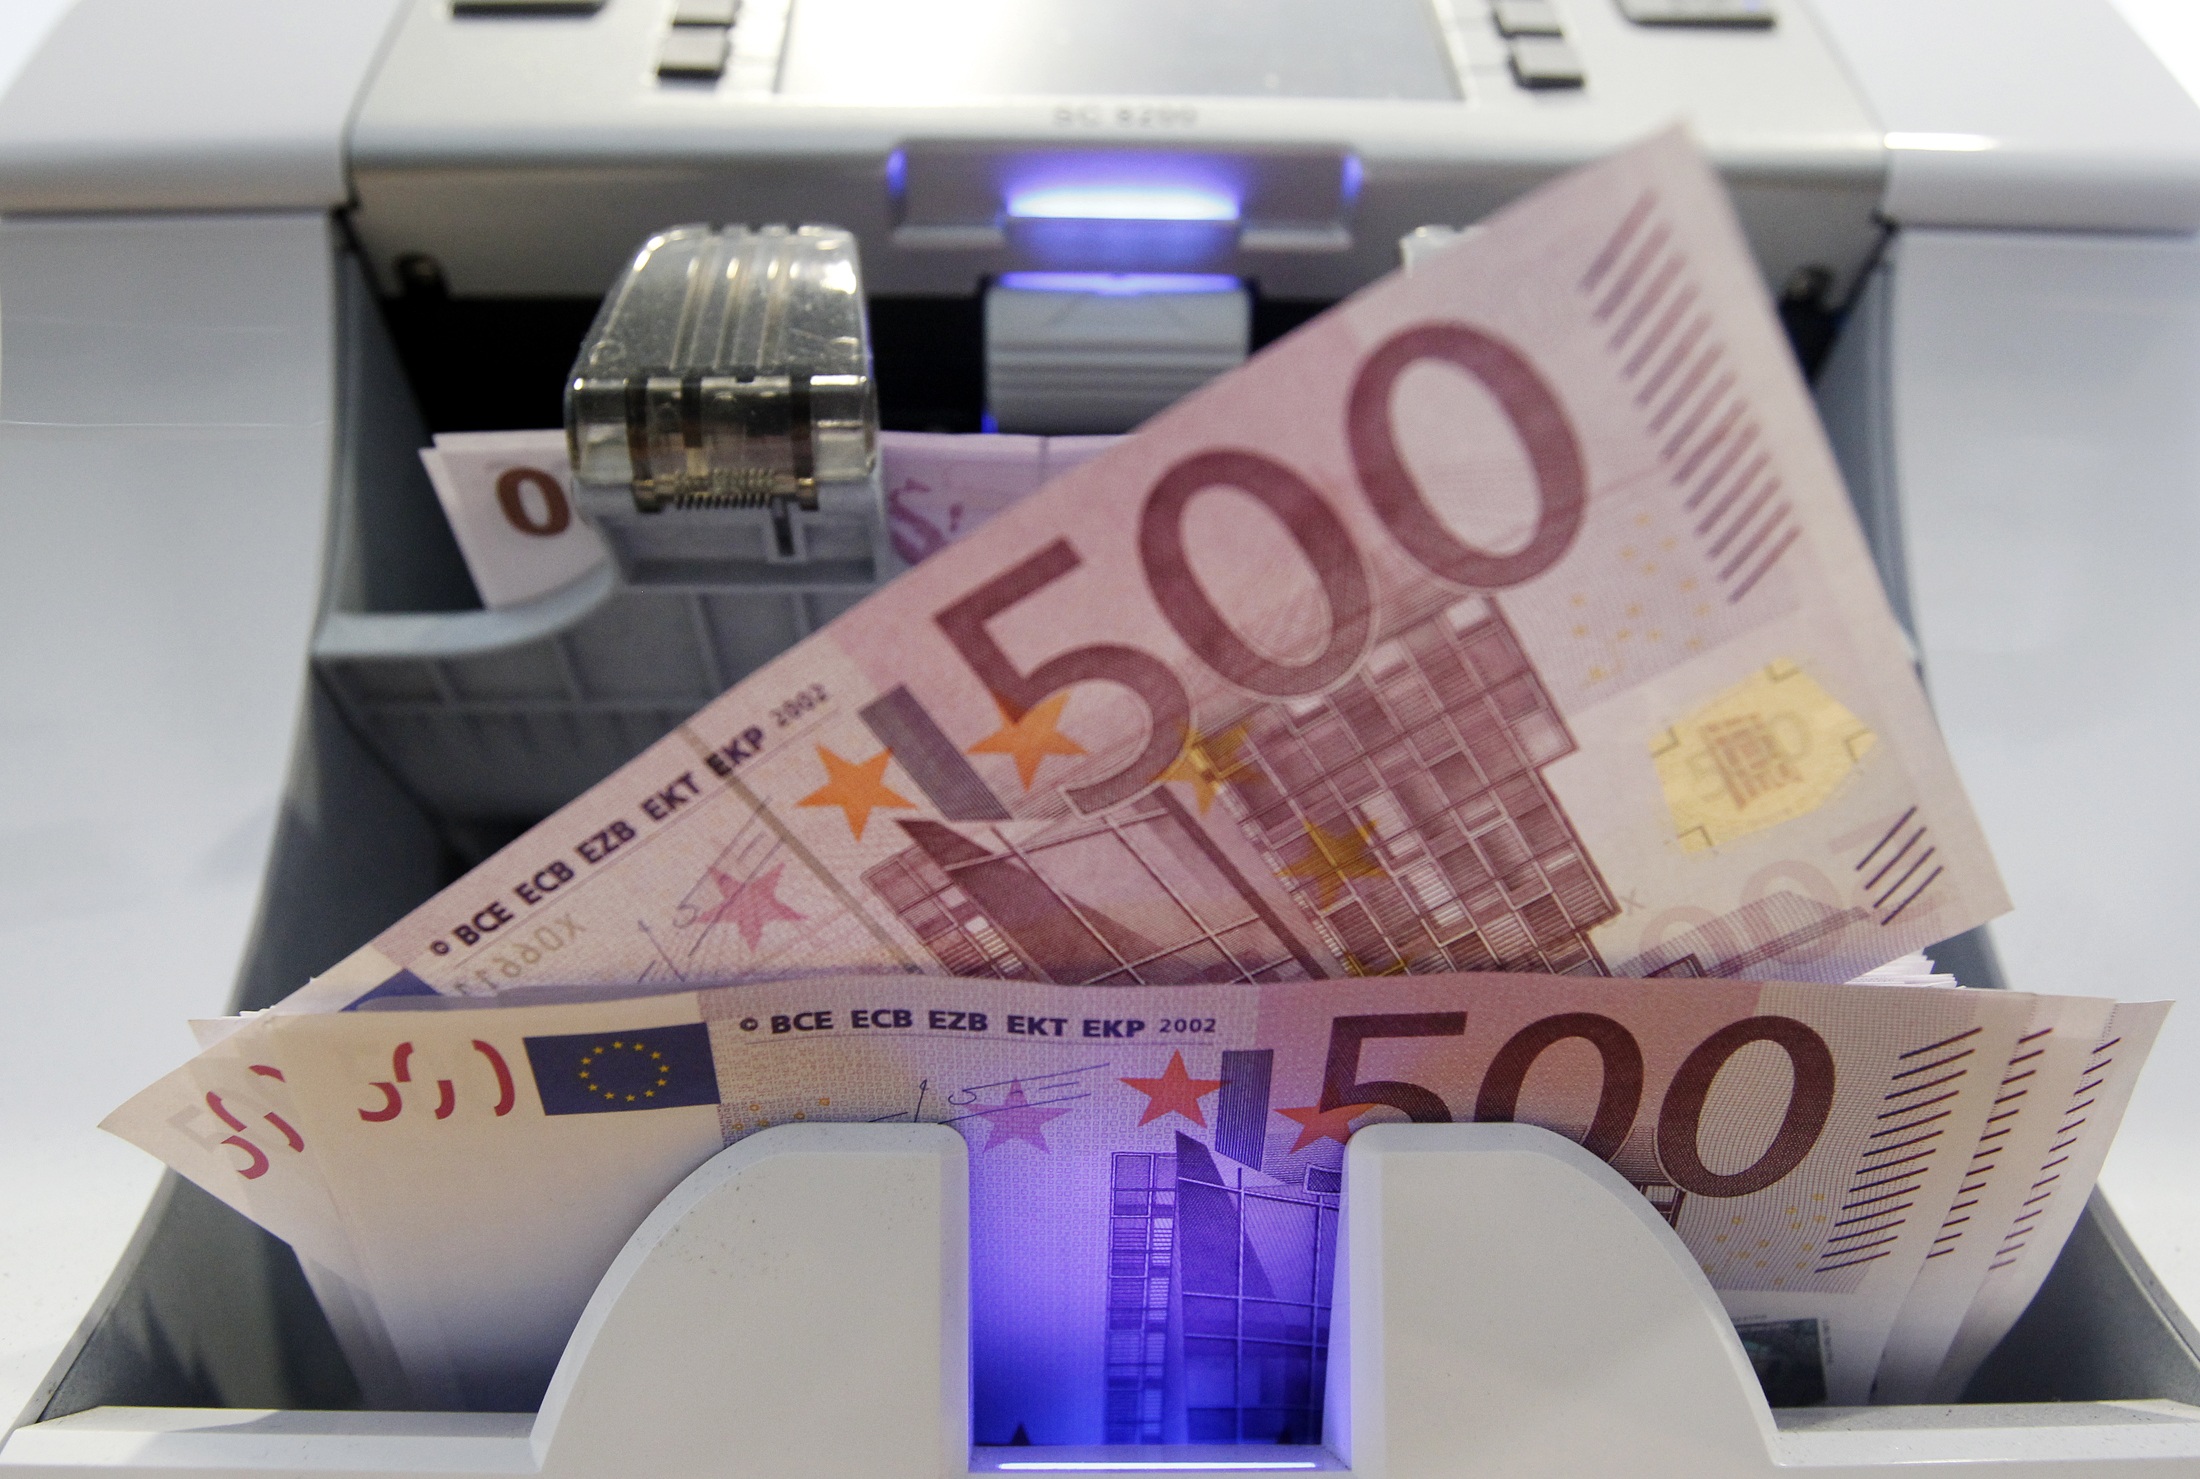 Οικονομικό Επιμελητήριο: Εκδοση εγκυκλίου για τα ληξιπρόθεσμα χρέη | tovima.gr